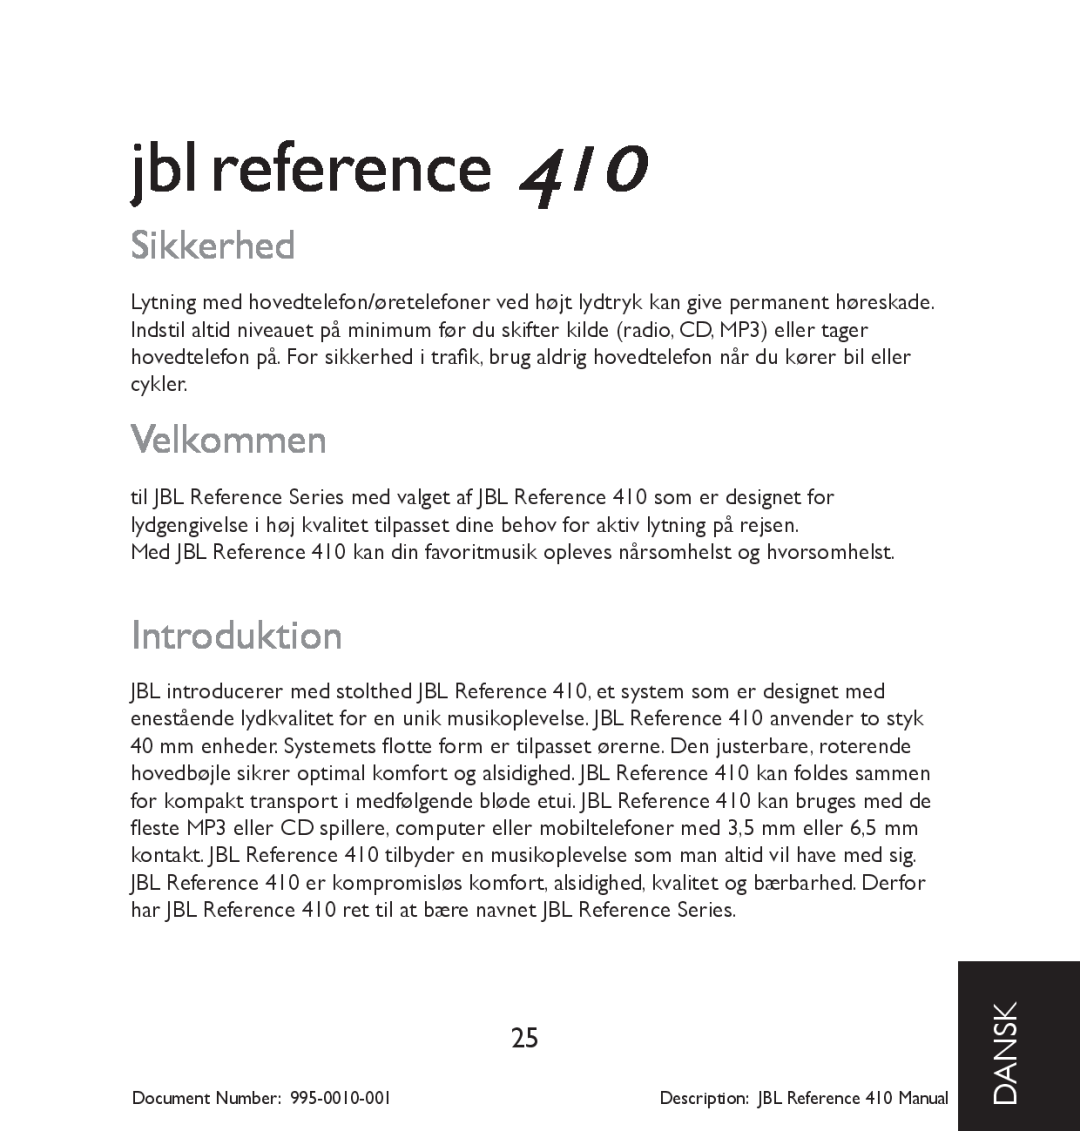 JBL 410 manual Sikkerhed, Velkommen, Introduktion, dansk, jbl reference 